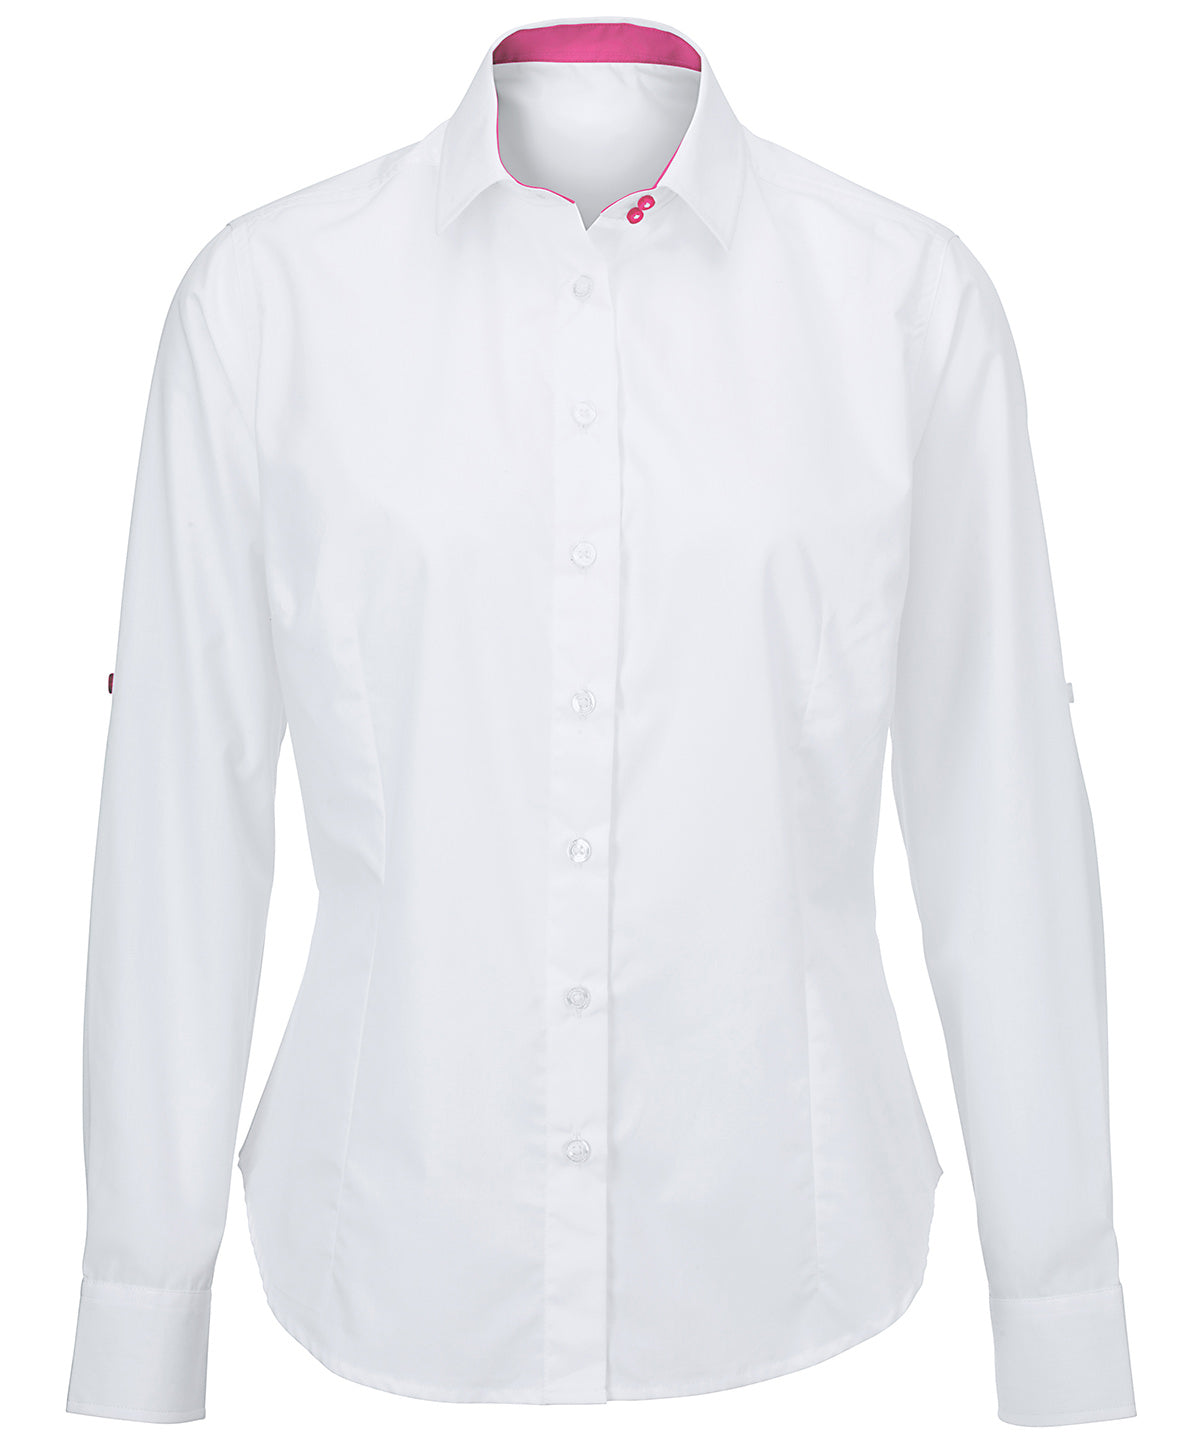 Bolir - Women's White Roll-up Sleeve Shirt (NF521W)